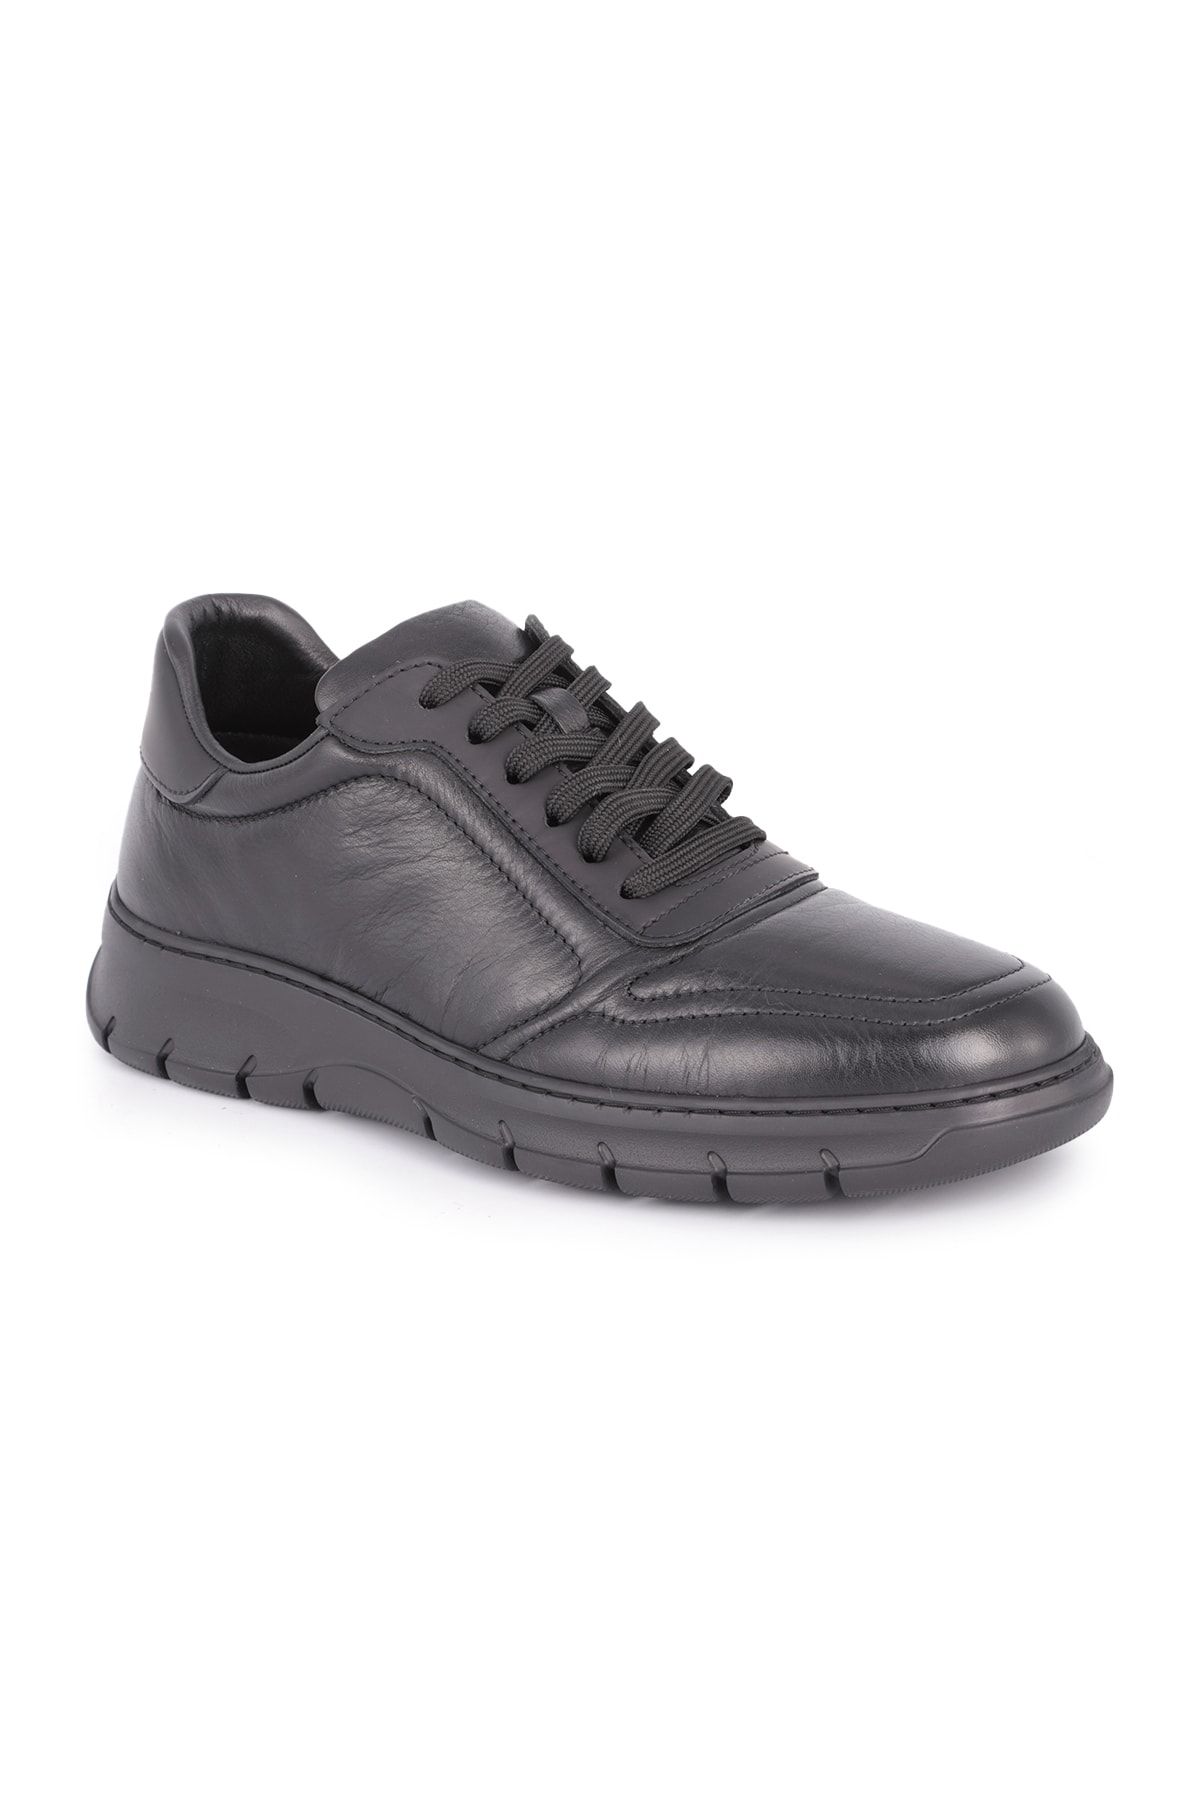 Libero L4502 Comfort Deri Erkek Spor Ayakkabı Siyah